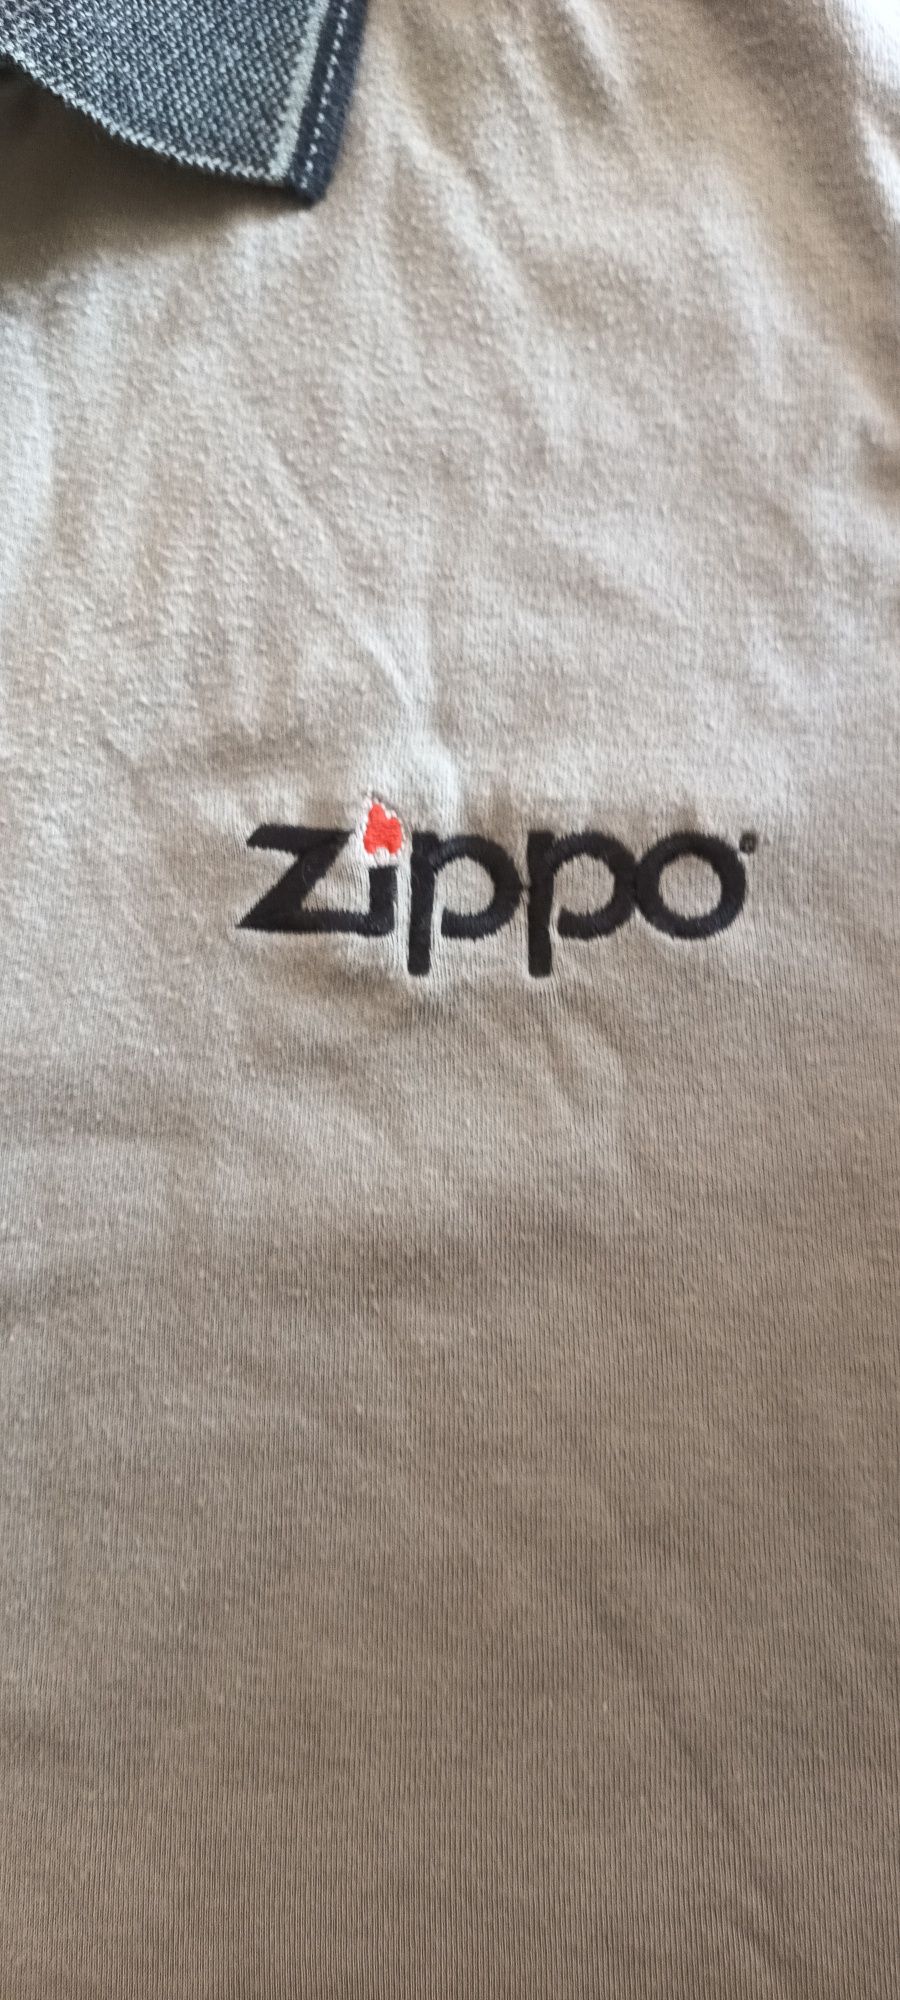 Polo Zippo original 100% algodão